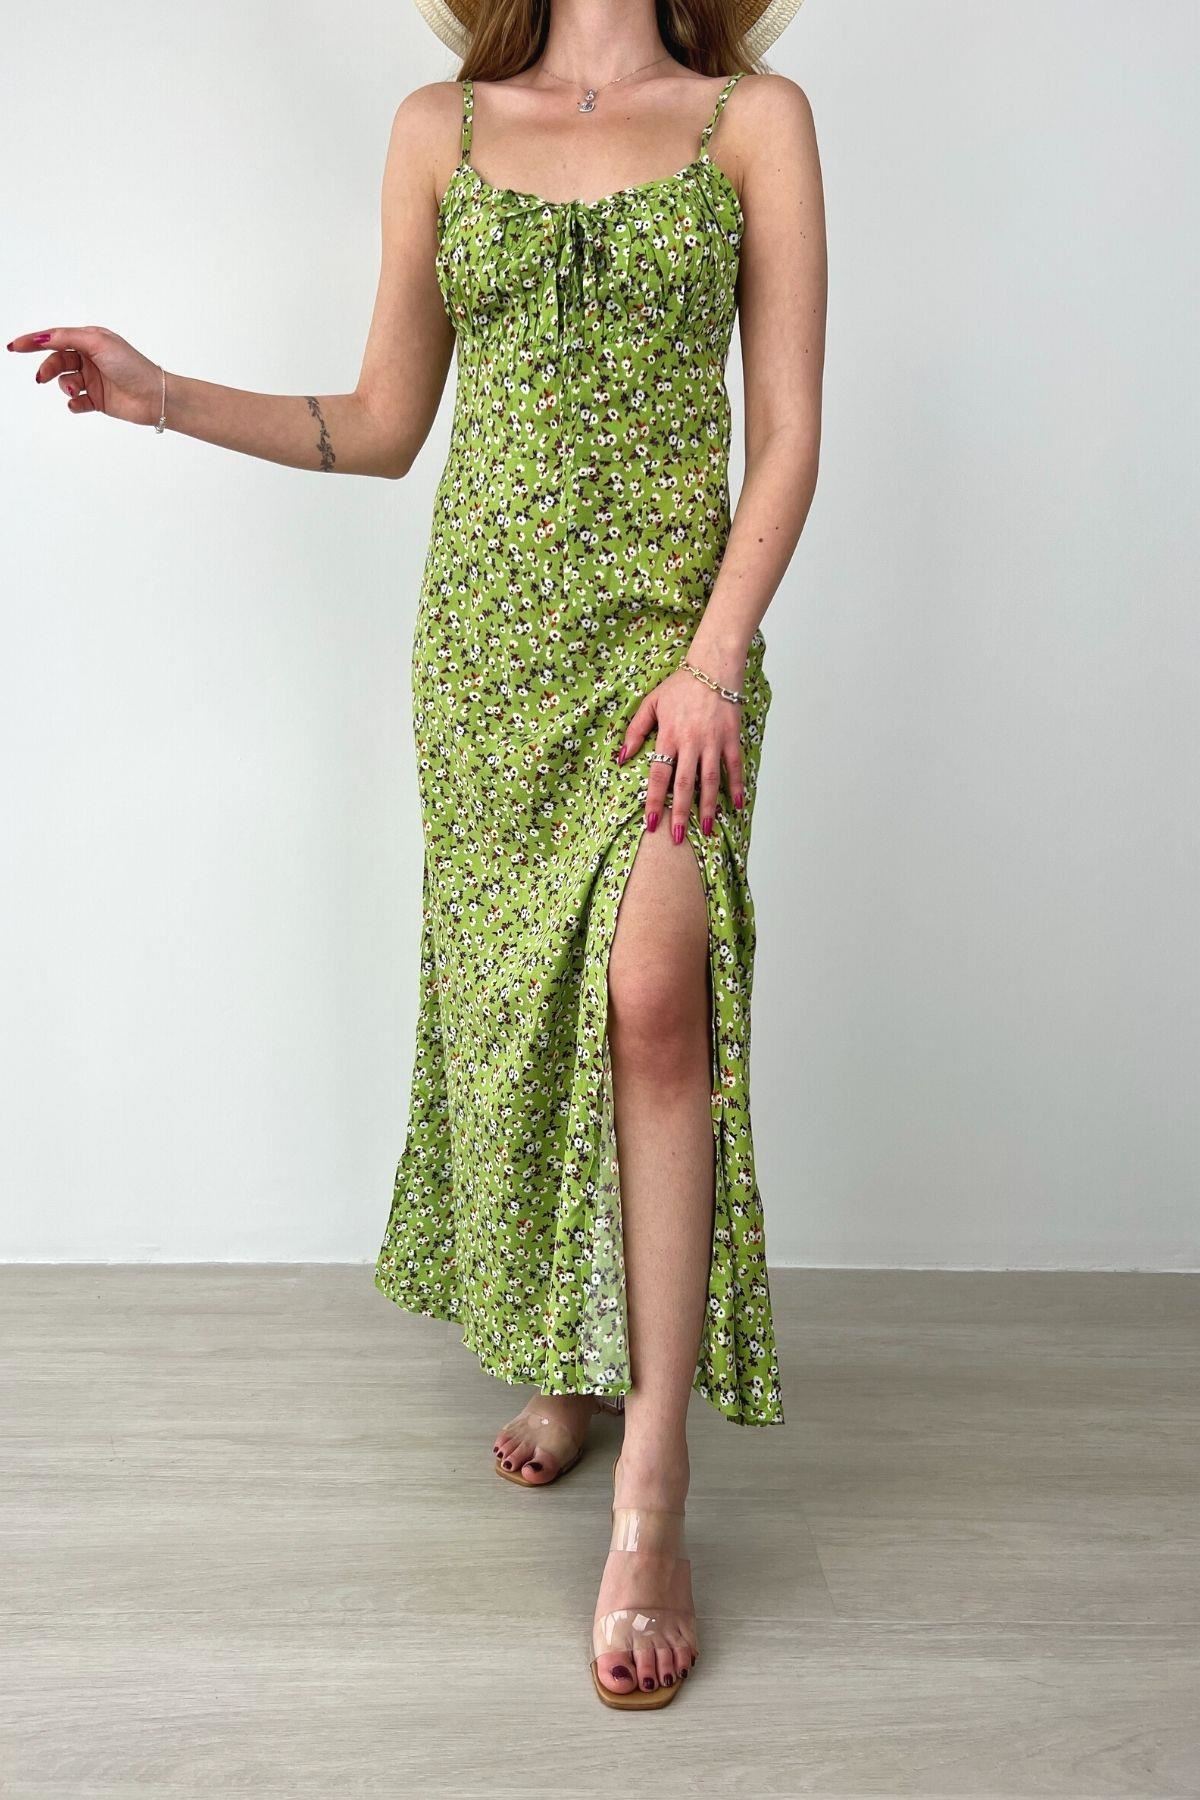 Kadın Askılı Bilek Boy Yeşil Yırtmaçlı Yazlık Dokuma Elbise 12C-2108